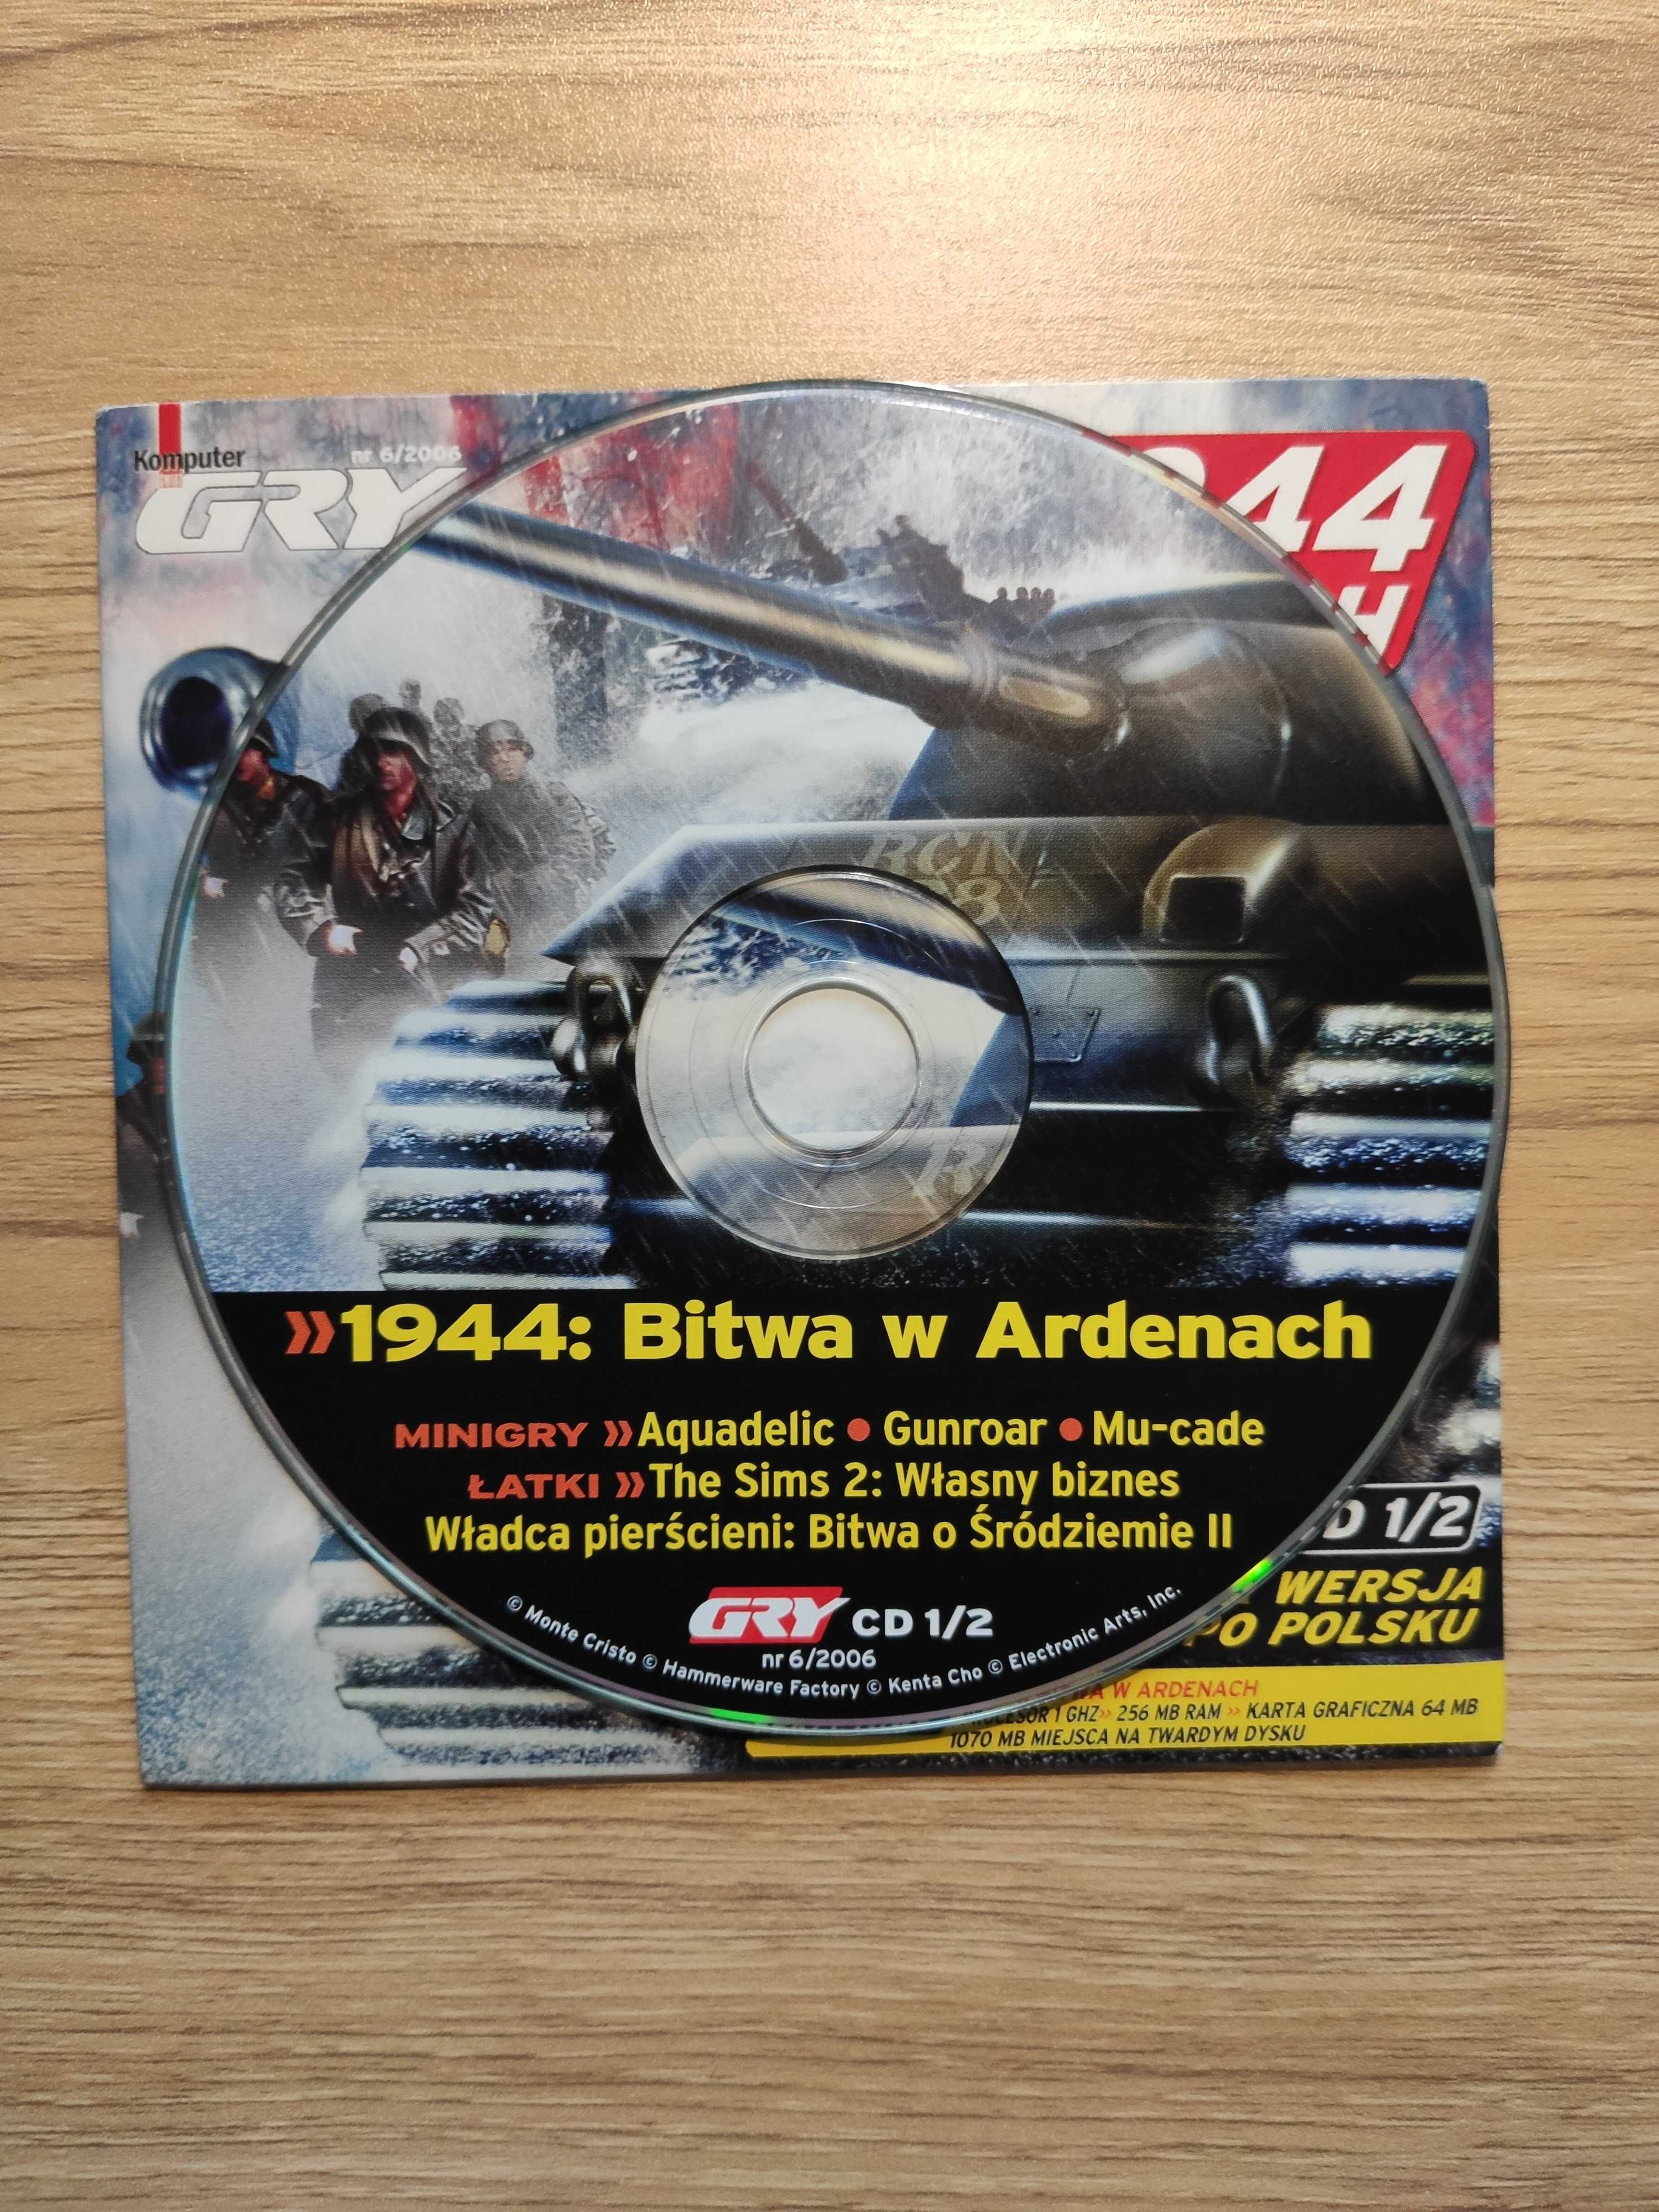 1944: Bitwa w Ardenach CD 1/2